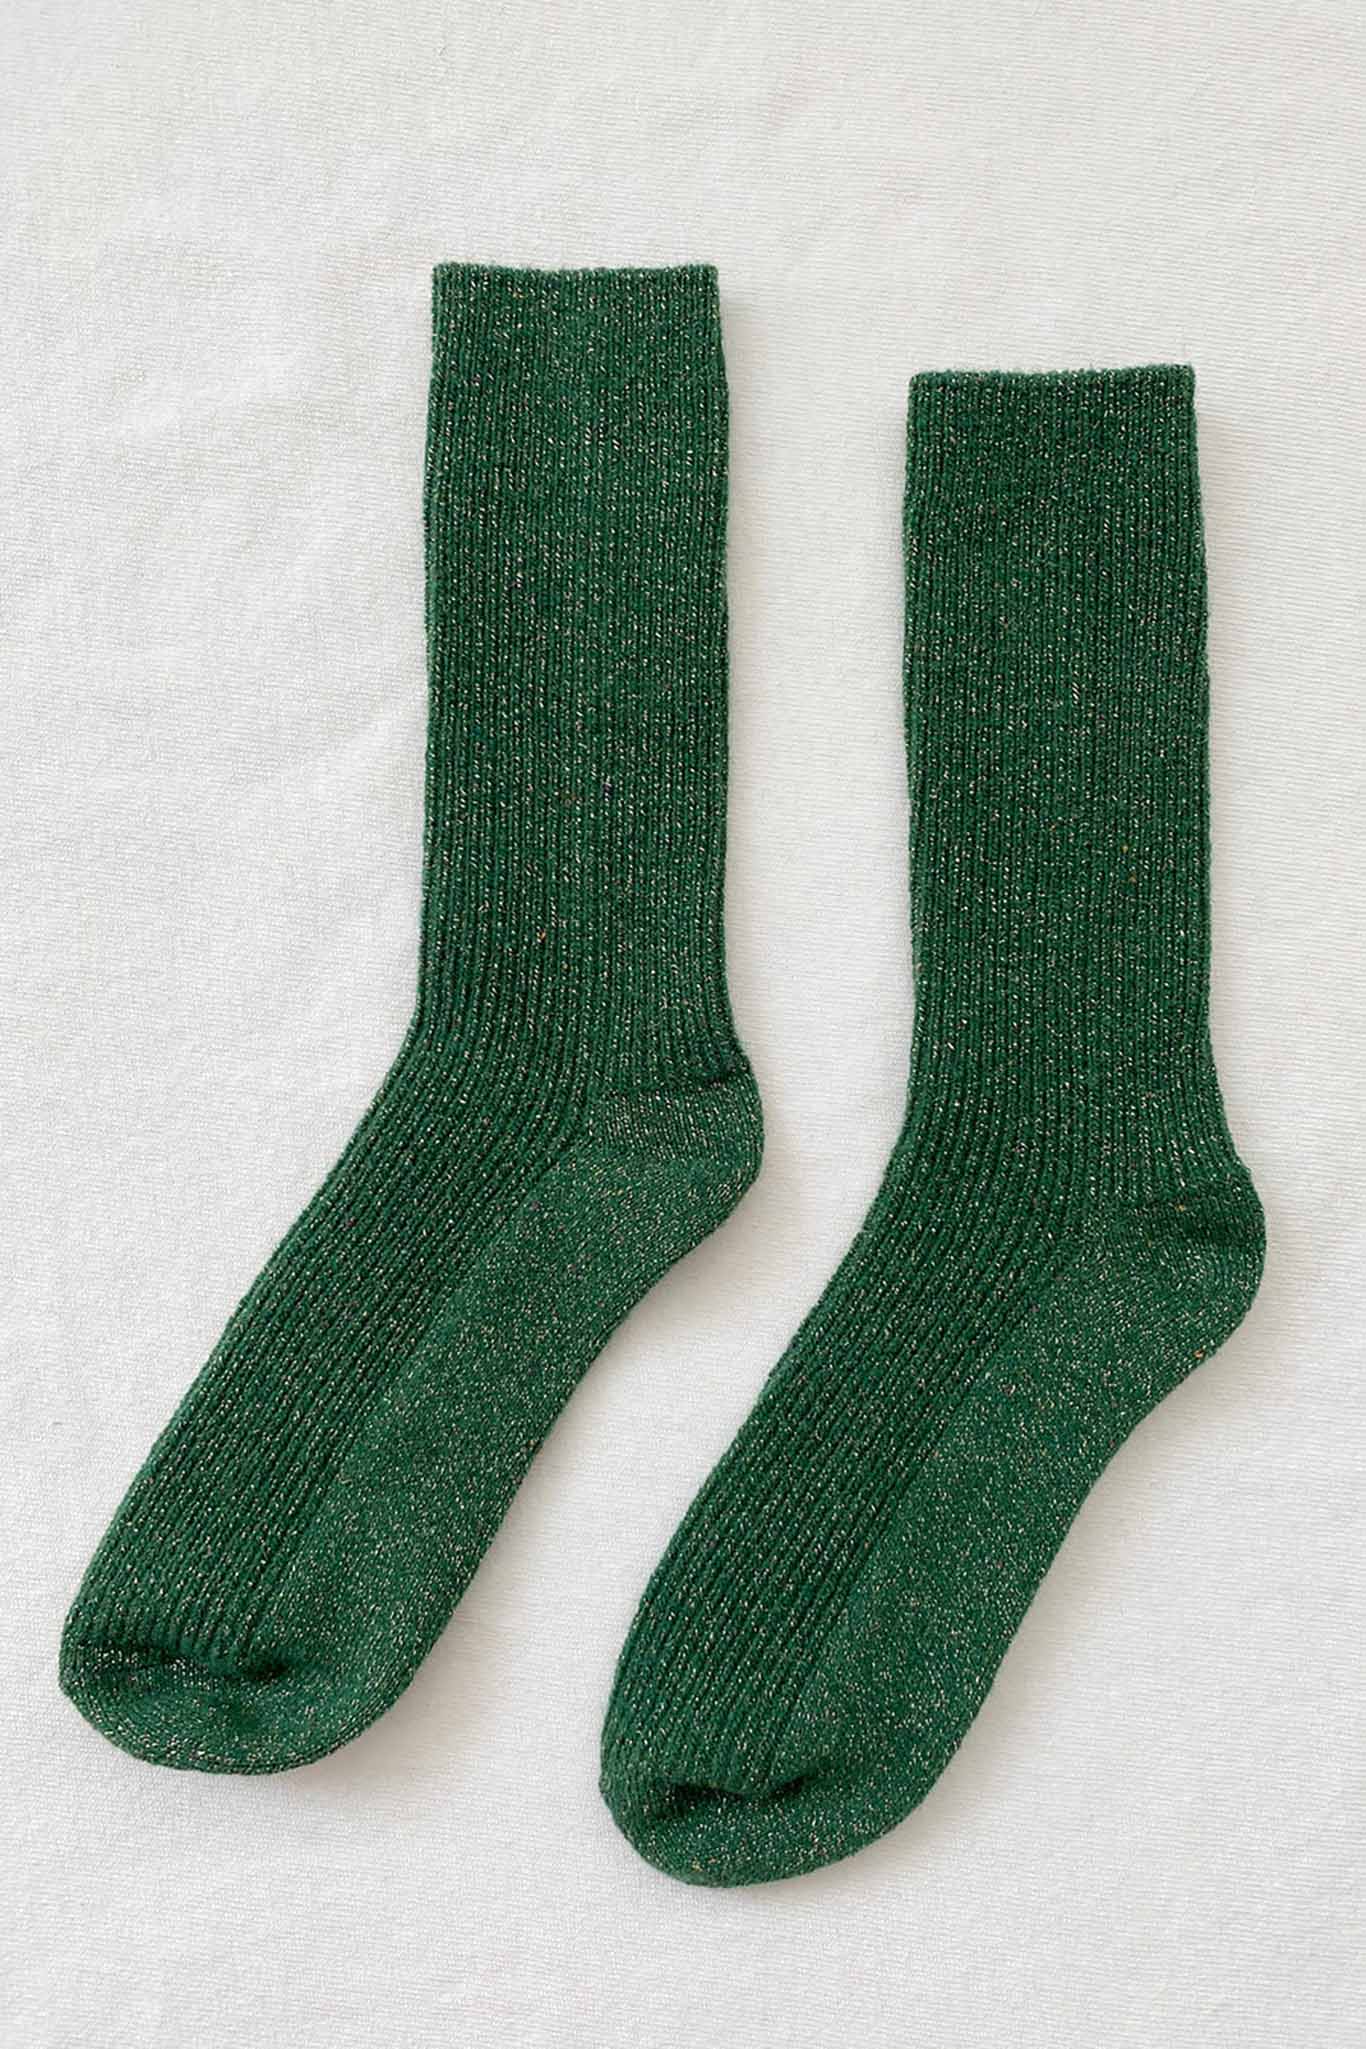 Le Bon Shoppe Winter Socks - Evergreen